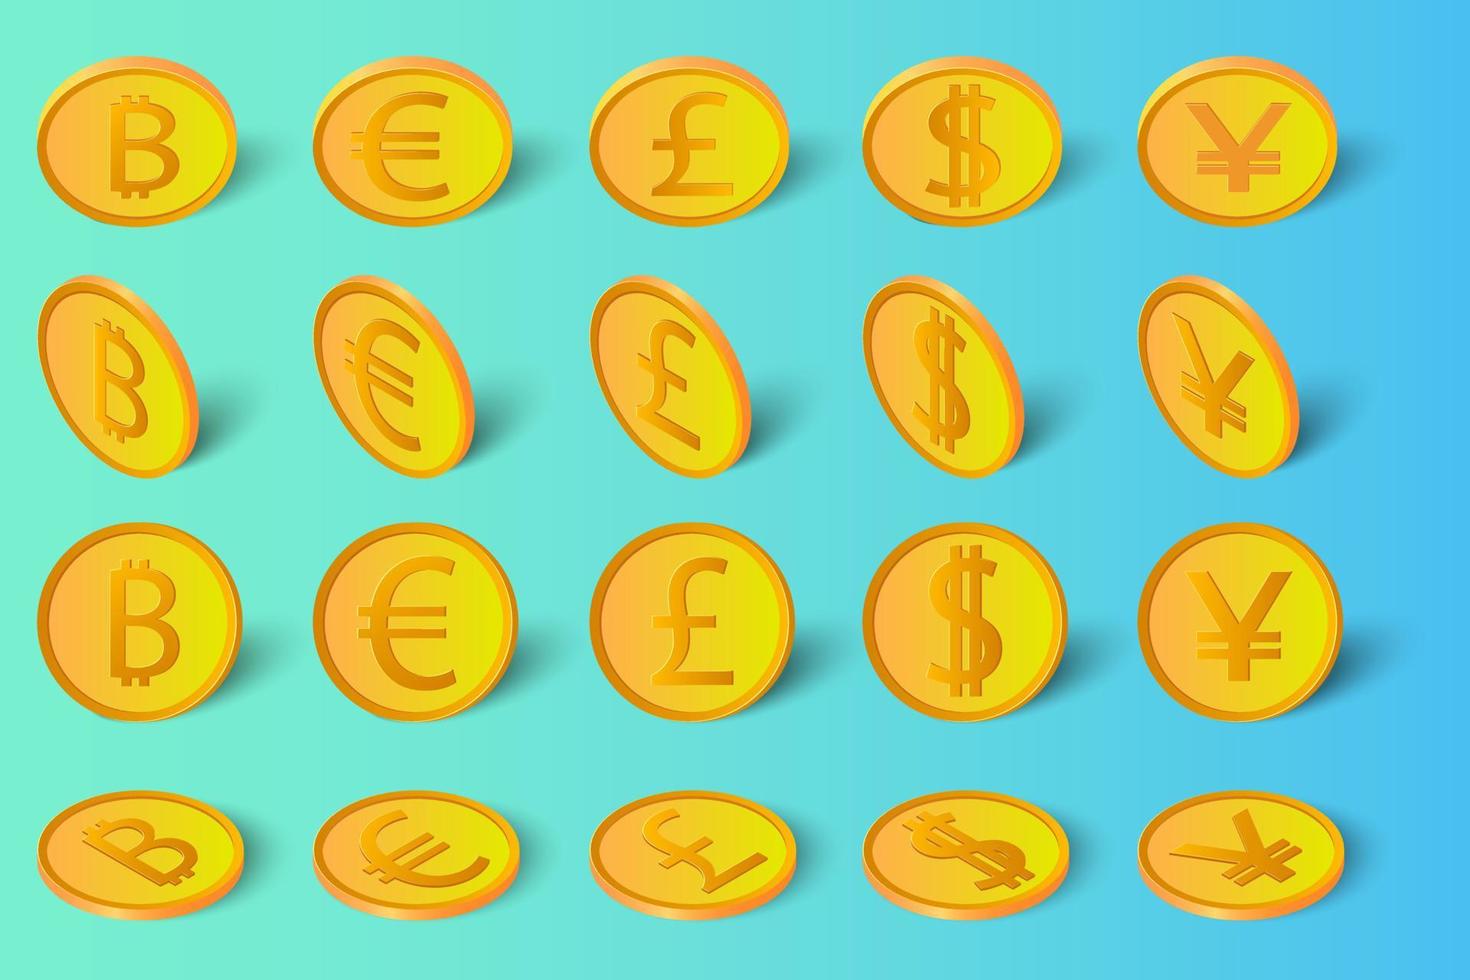 le bitcoin dollar euro livre et yen avec les ombres .un ensemble de pièces de crypto-monnaies européennes américaines de pièces britanniques et japonaises sous différents angles isolés sur un fond bleu-vert. vecteur